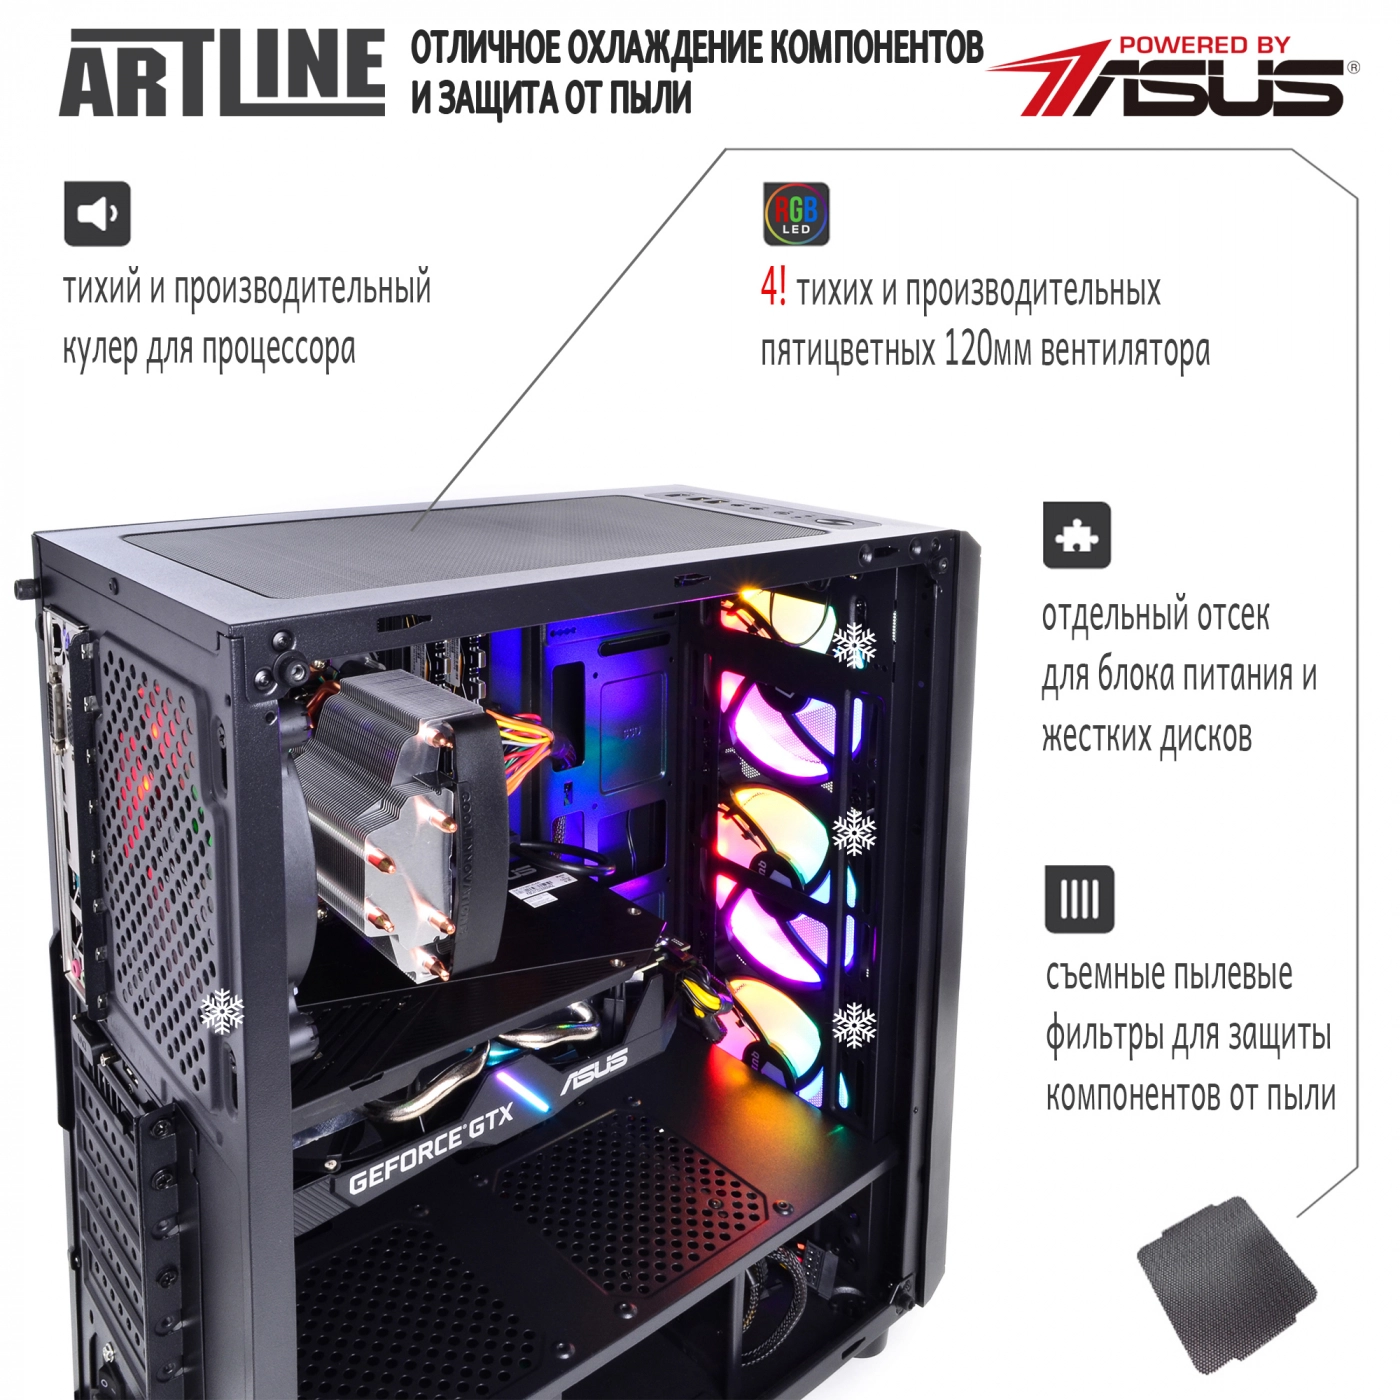 Купить Компьютер ARTLINE Gaming X39v41 - фото 3